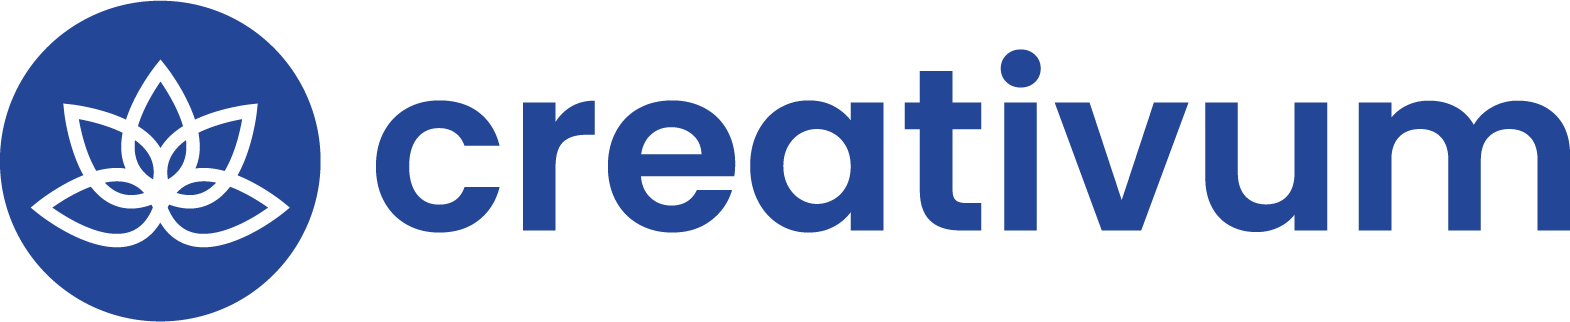 Blåt logo - Footer